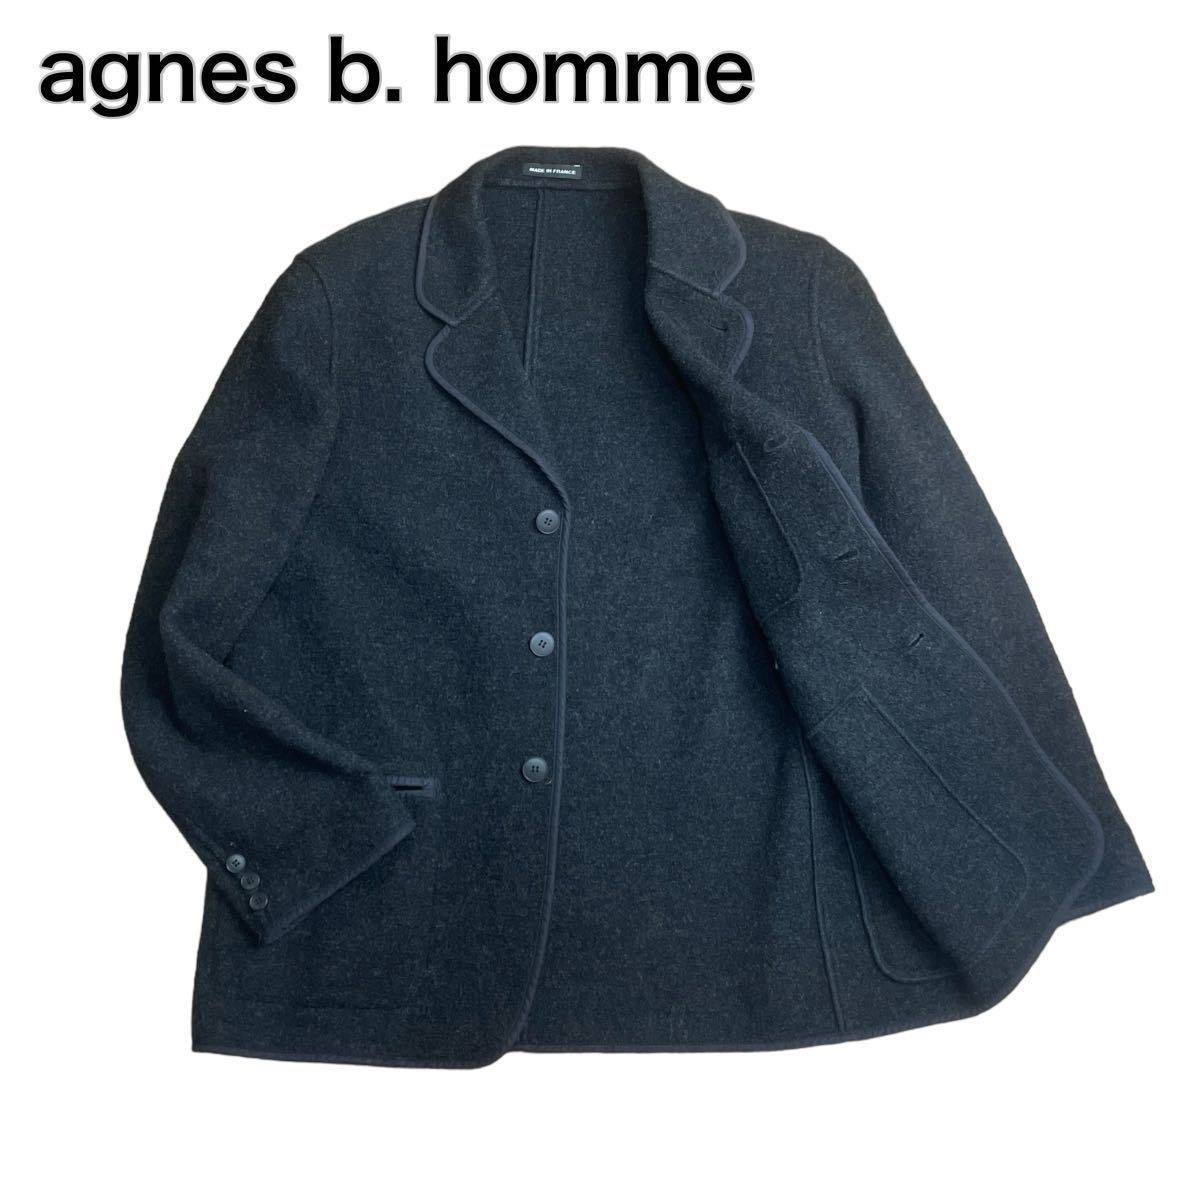 agnes b. homme アニエスベーオム フランス性 ウールジャケット ブラック黒 L相当_画像1